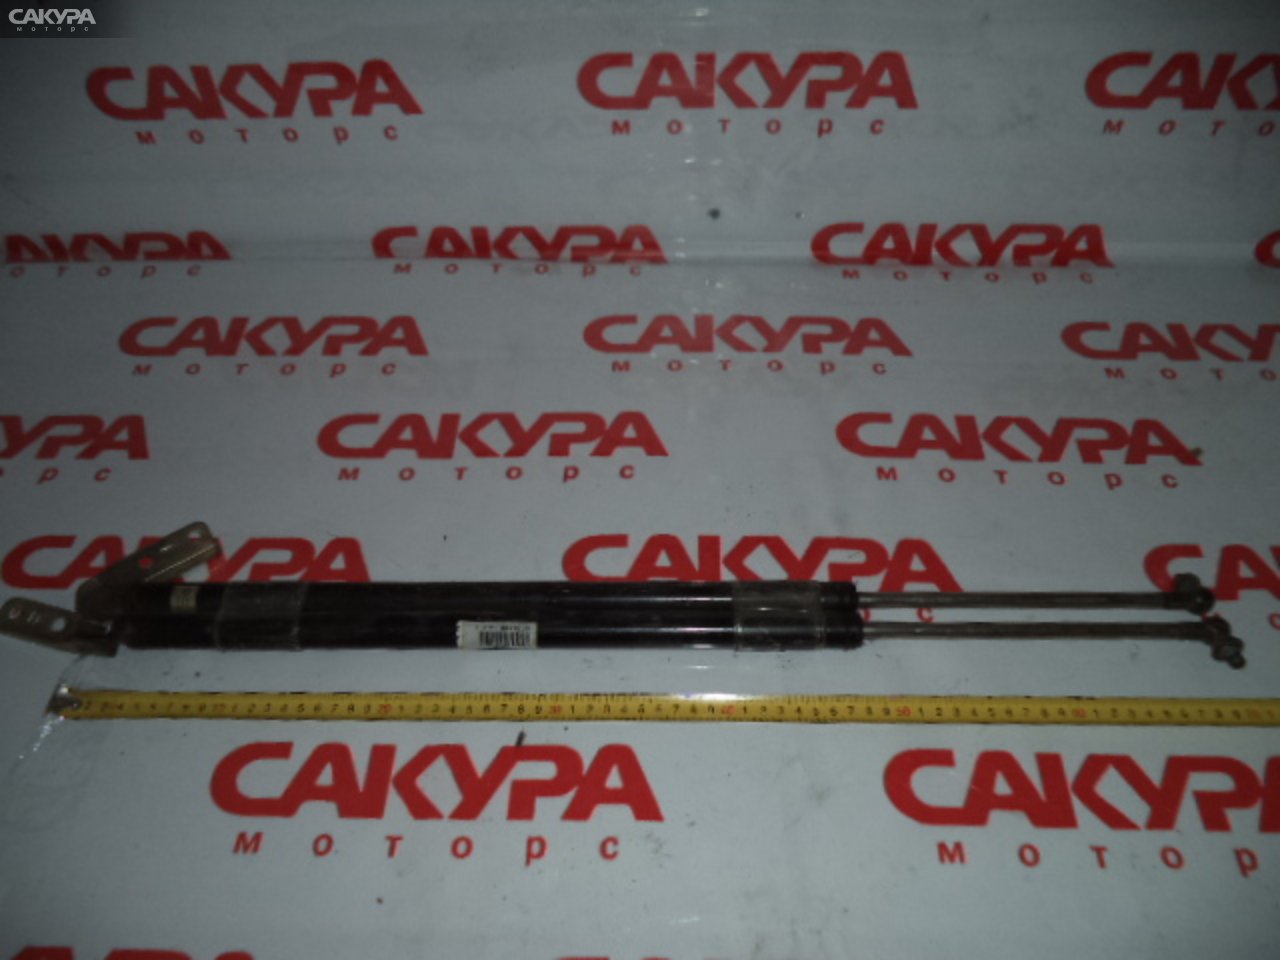 Амортизатор двери Toyota Liteace CM36V: купить в Сакура Кемерово.